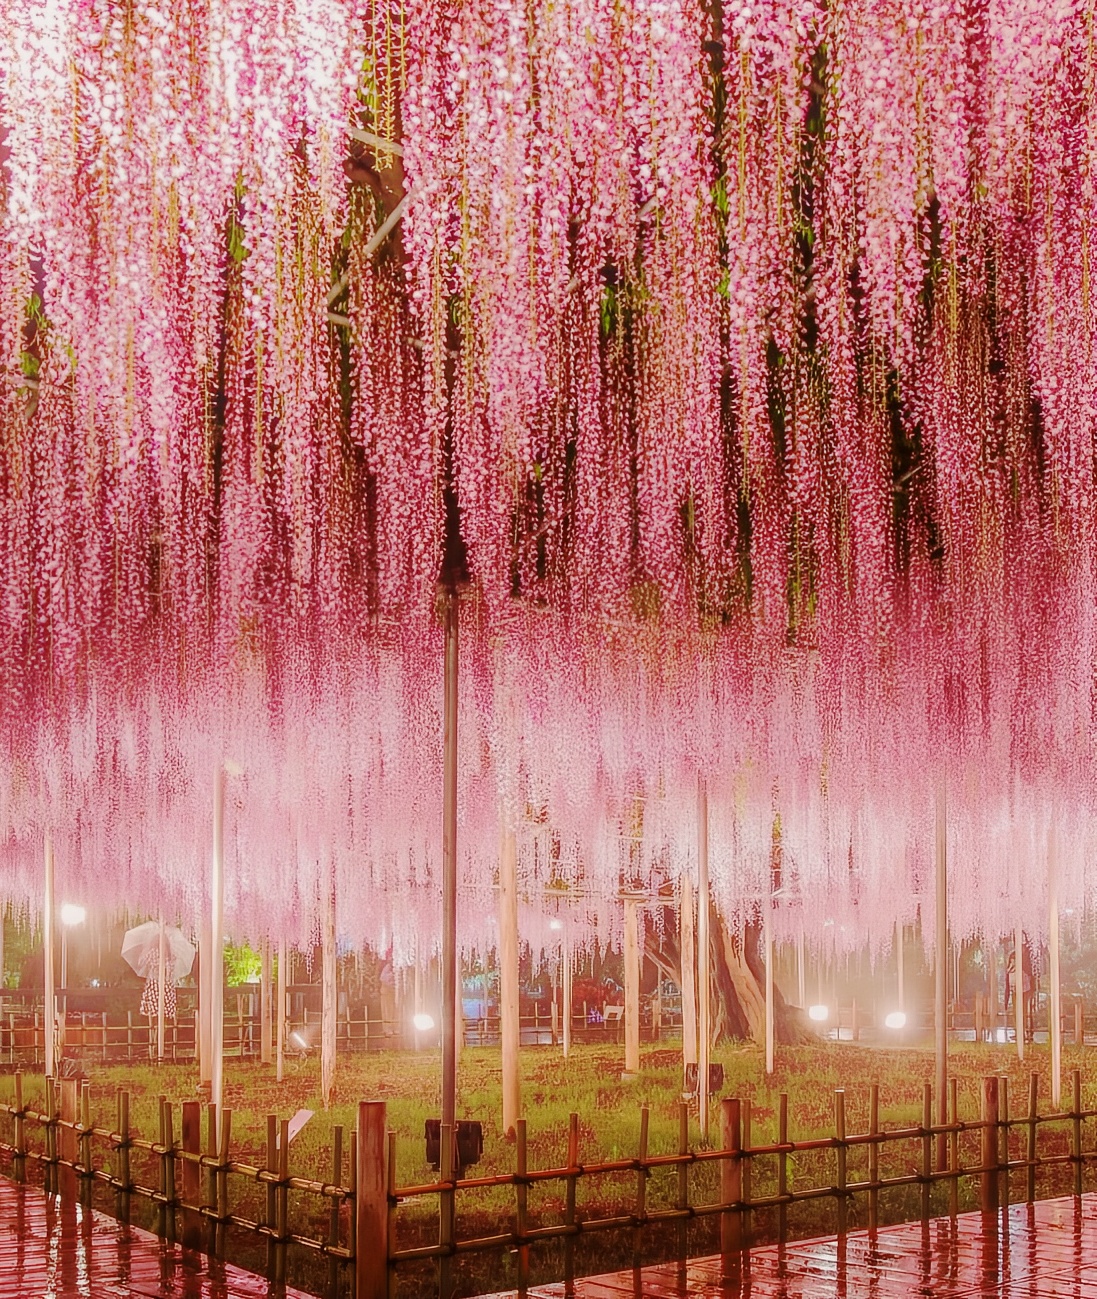 160岁的紫藤瀑布资东京周边一年只限定30天